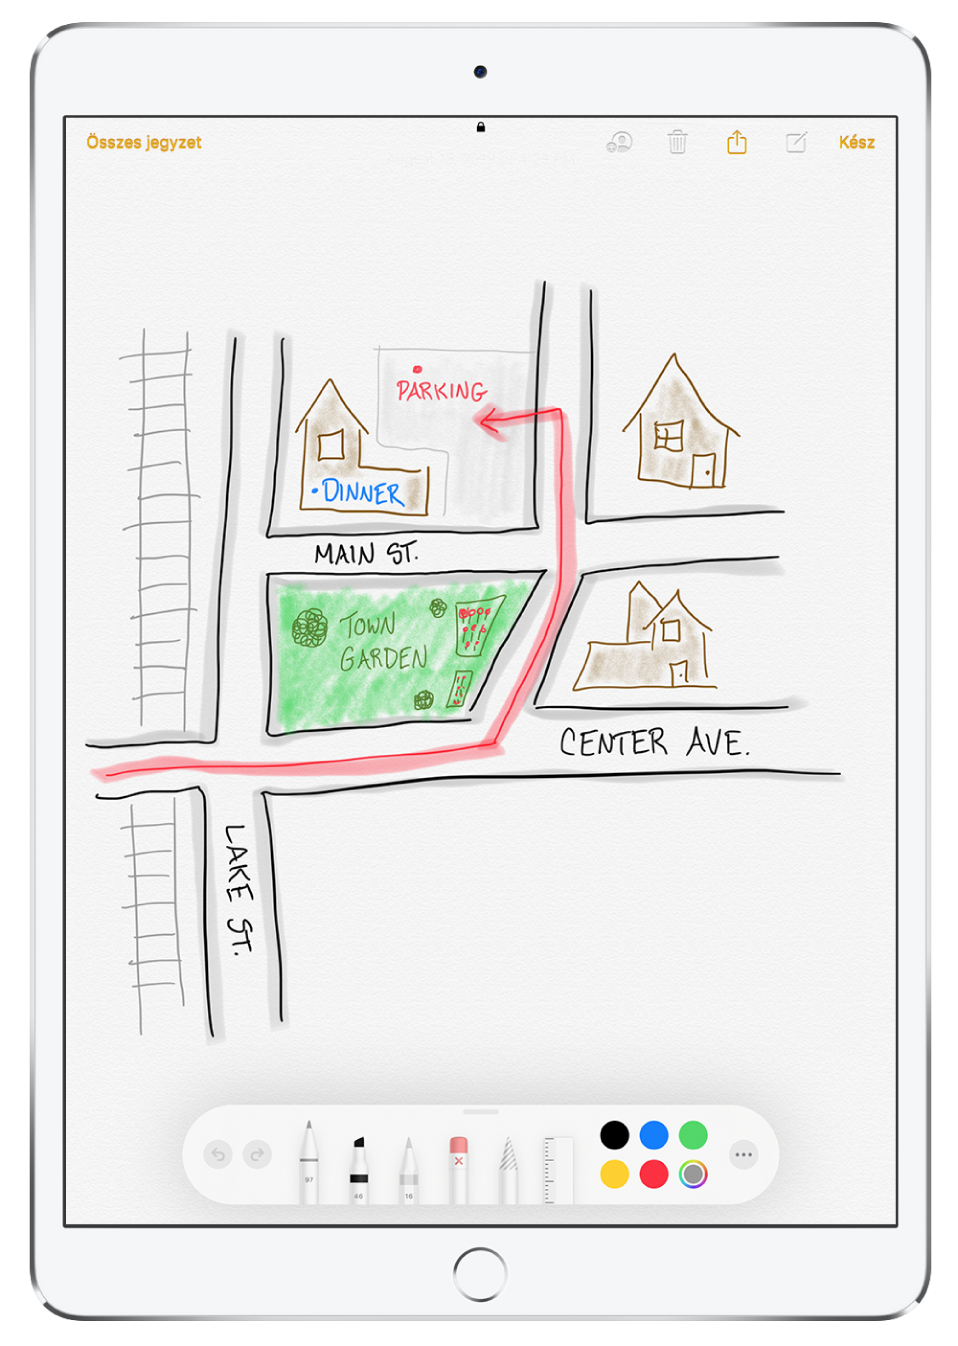 Jegyzetben lévő rajz egy környékről a Jegyzetek alkalmazásban. A rajzon névvel ellátott utcák láthatók, ezenkívül egy piros nyíl, amely a szabad parkolóhelyek felé mutat. A képernyő alján a korrektúra-eszközsor jelenik meg, amelyen egy íróeszköz és egy egyéni szín van kiválasztva.